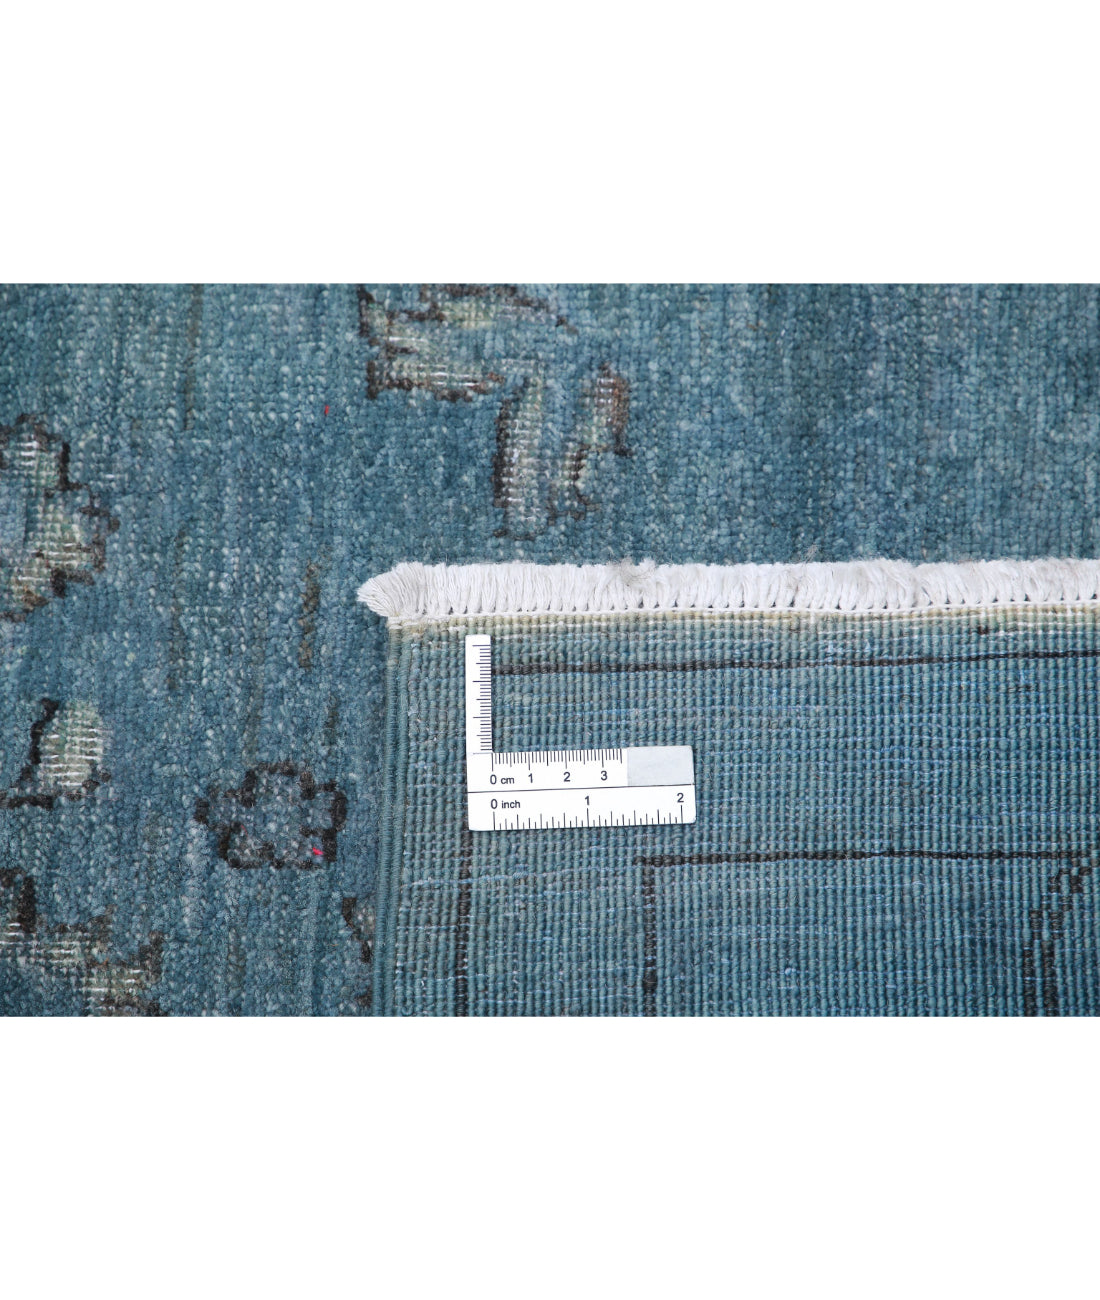 Hand Knotted Onyx Wool Rug - 5'10'' x 9'4'' 5'10'' x 9'4'' (175 X 280) / Grey / Grey